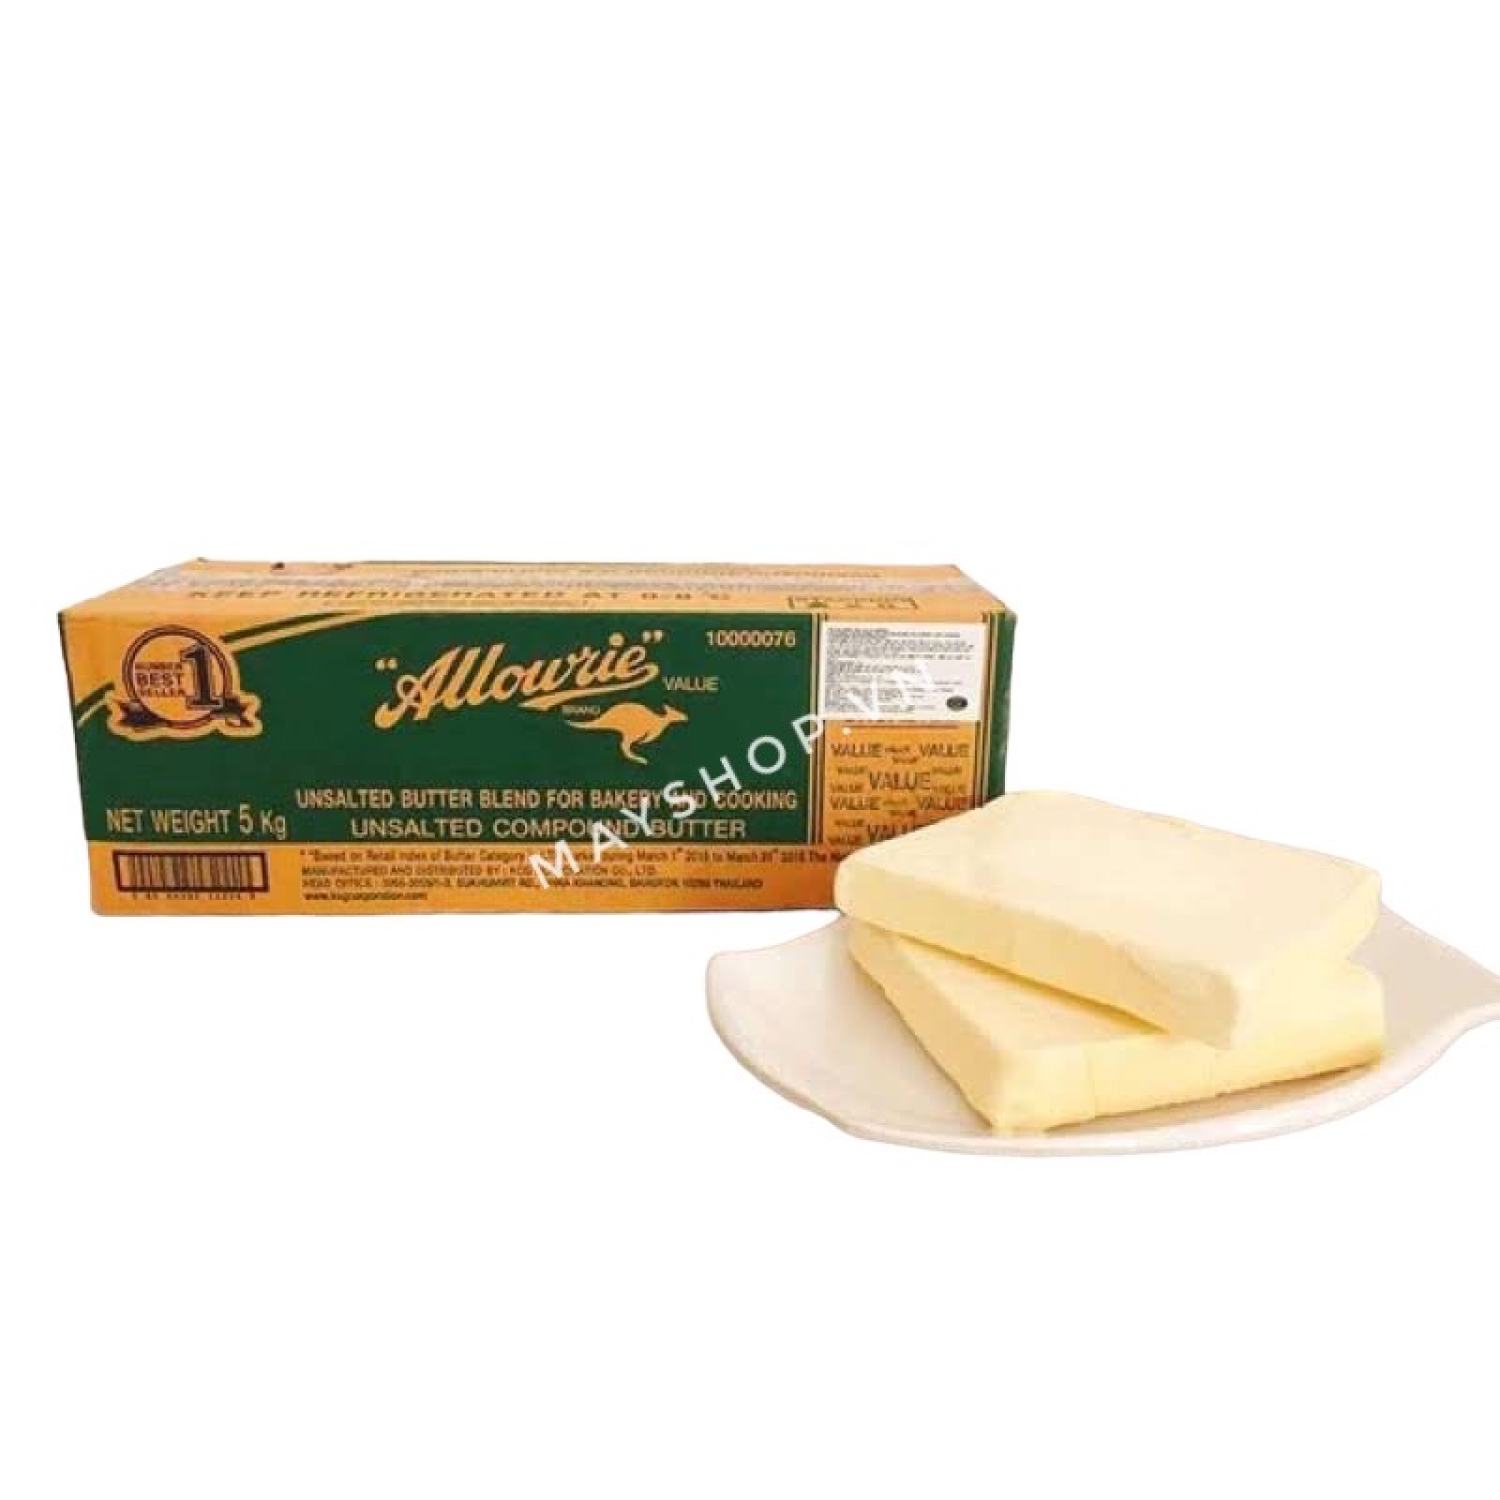 Bơ Lạt Bơ nhạt Allowrie 5kg - Chỉ Giao hàng Hỏa tốc tại Hà Nội